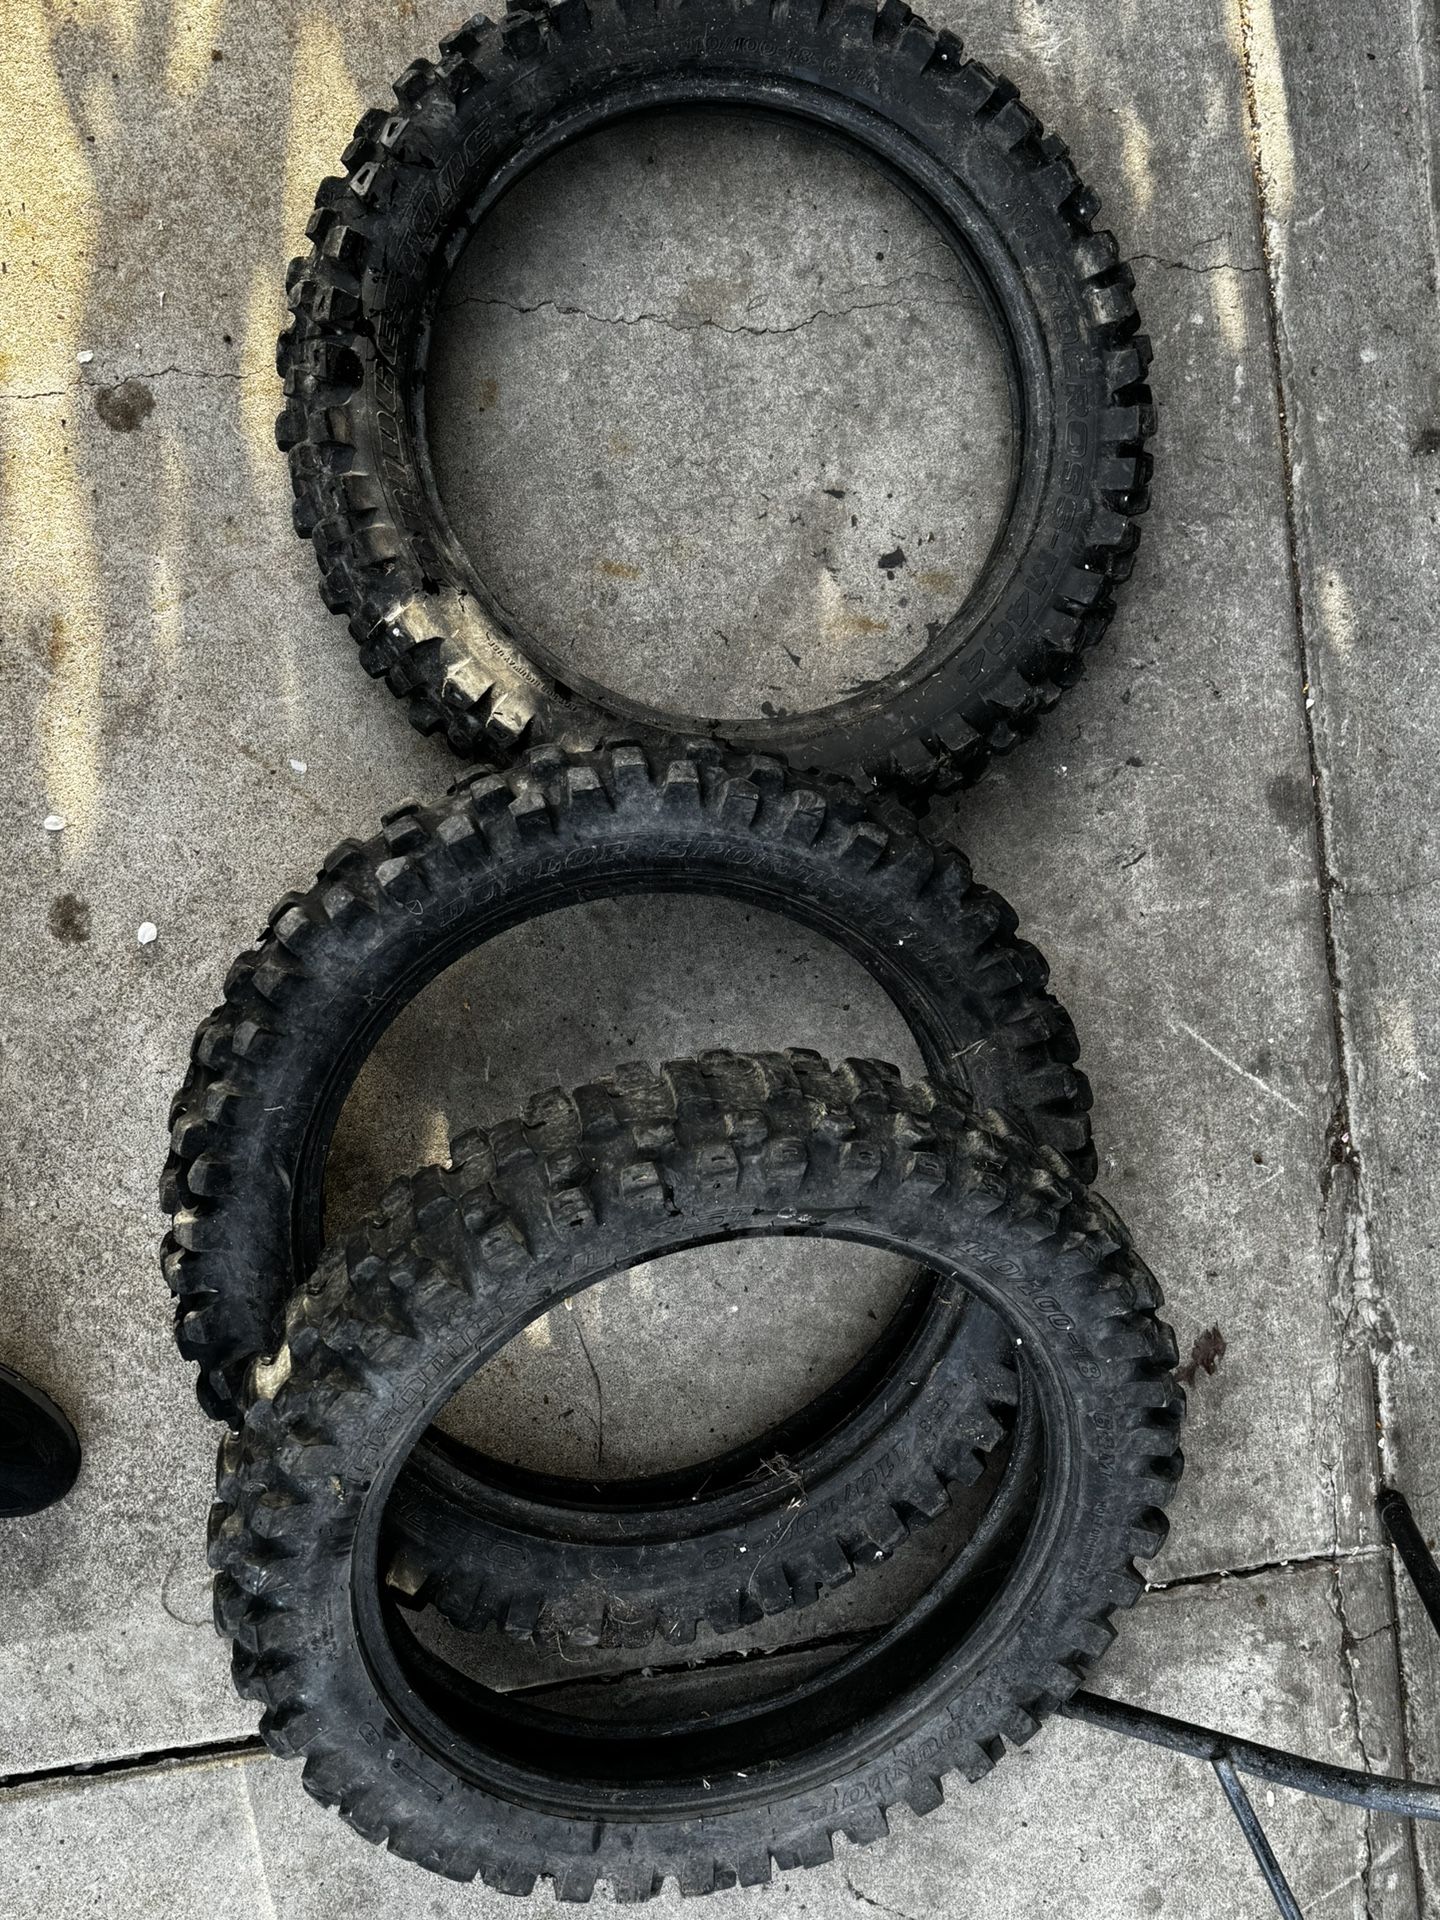 Dirt Bike Tires 